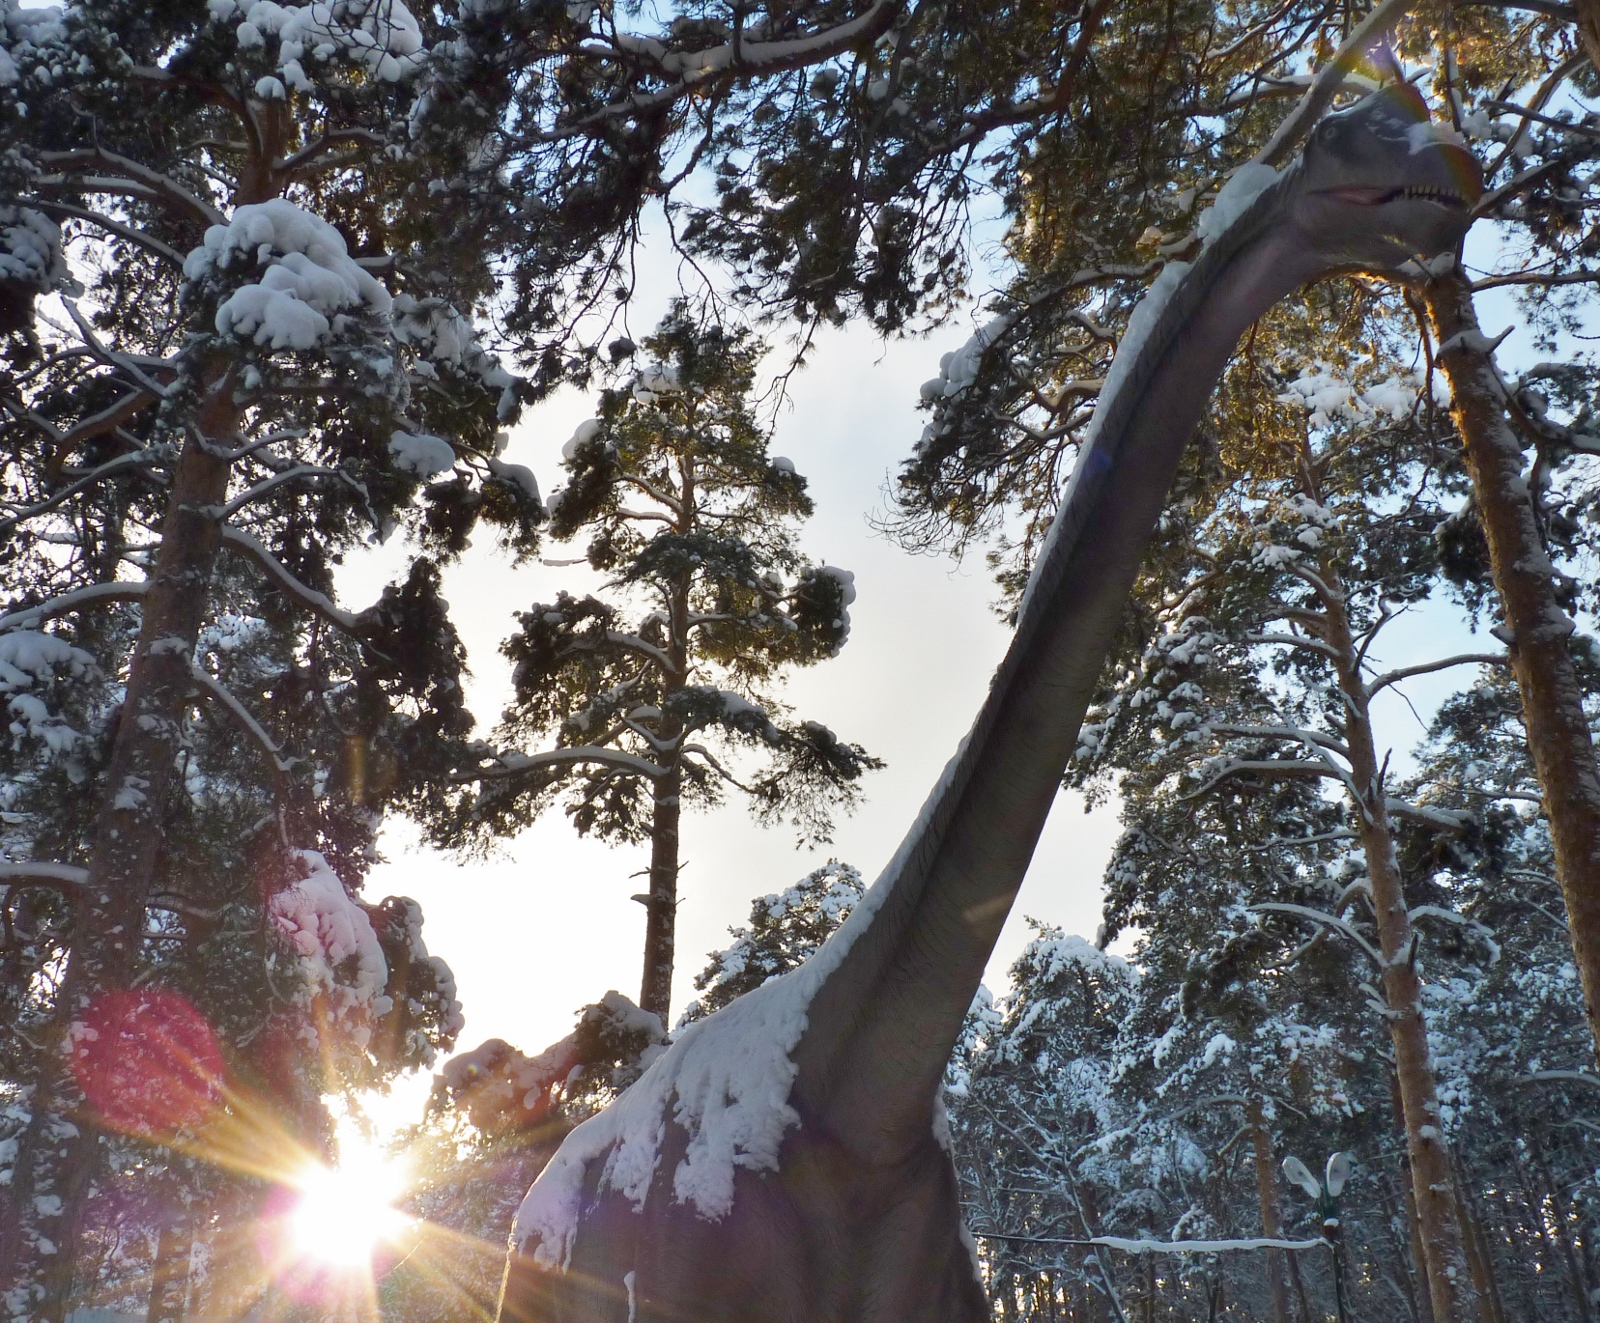 Чугаев Эдуард, г. Челябинск, школа № 151. "Гигант в сосновом лесу", ноинация "Ледниковый период в парке динозавров"